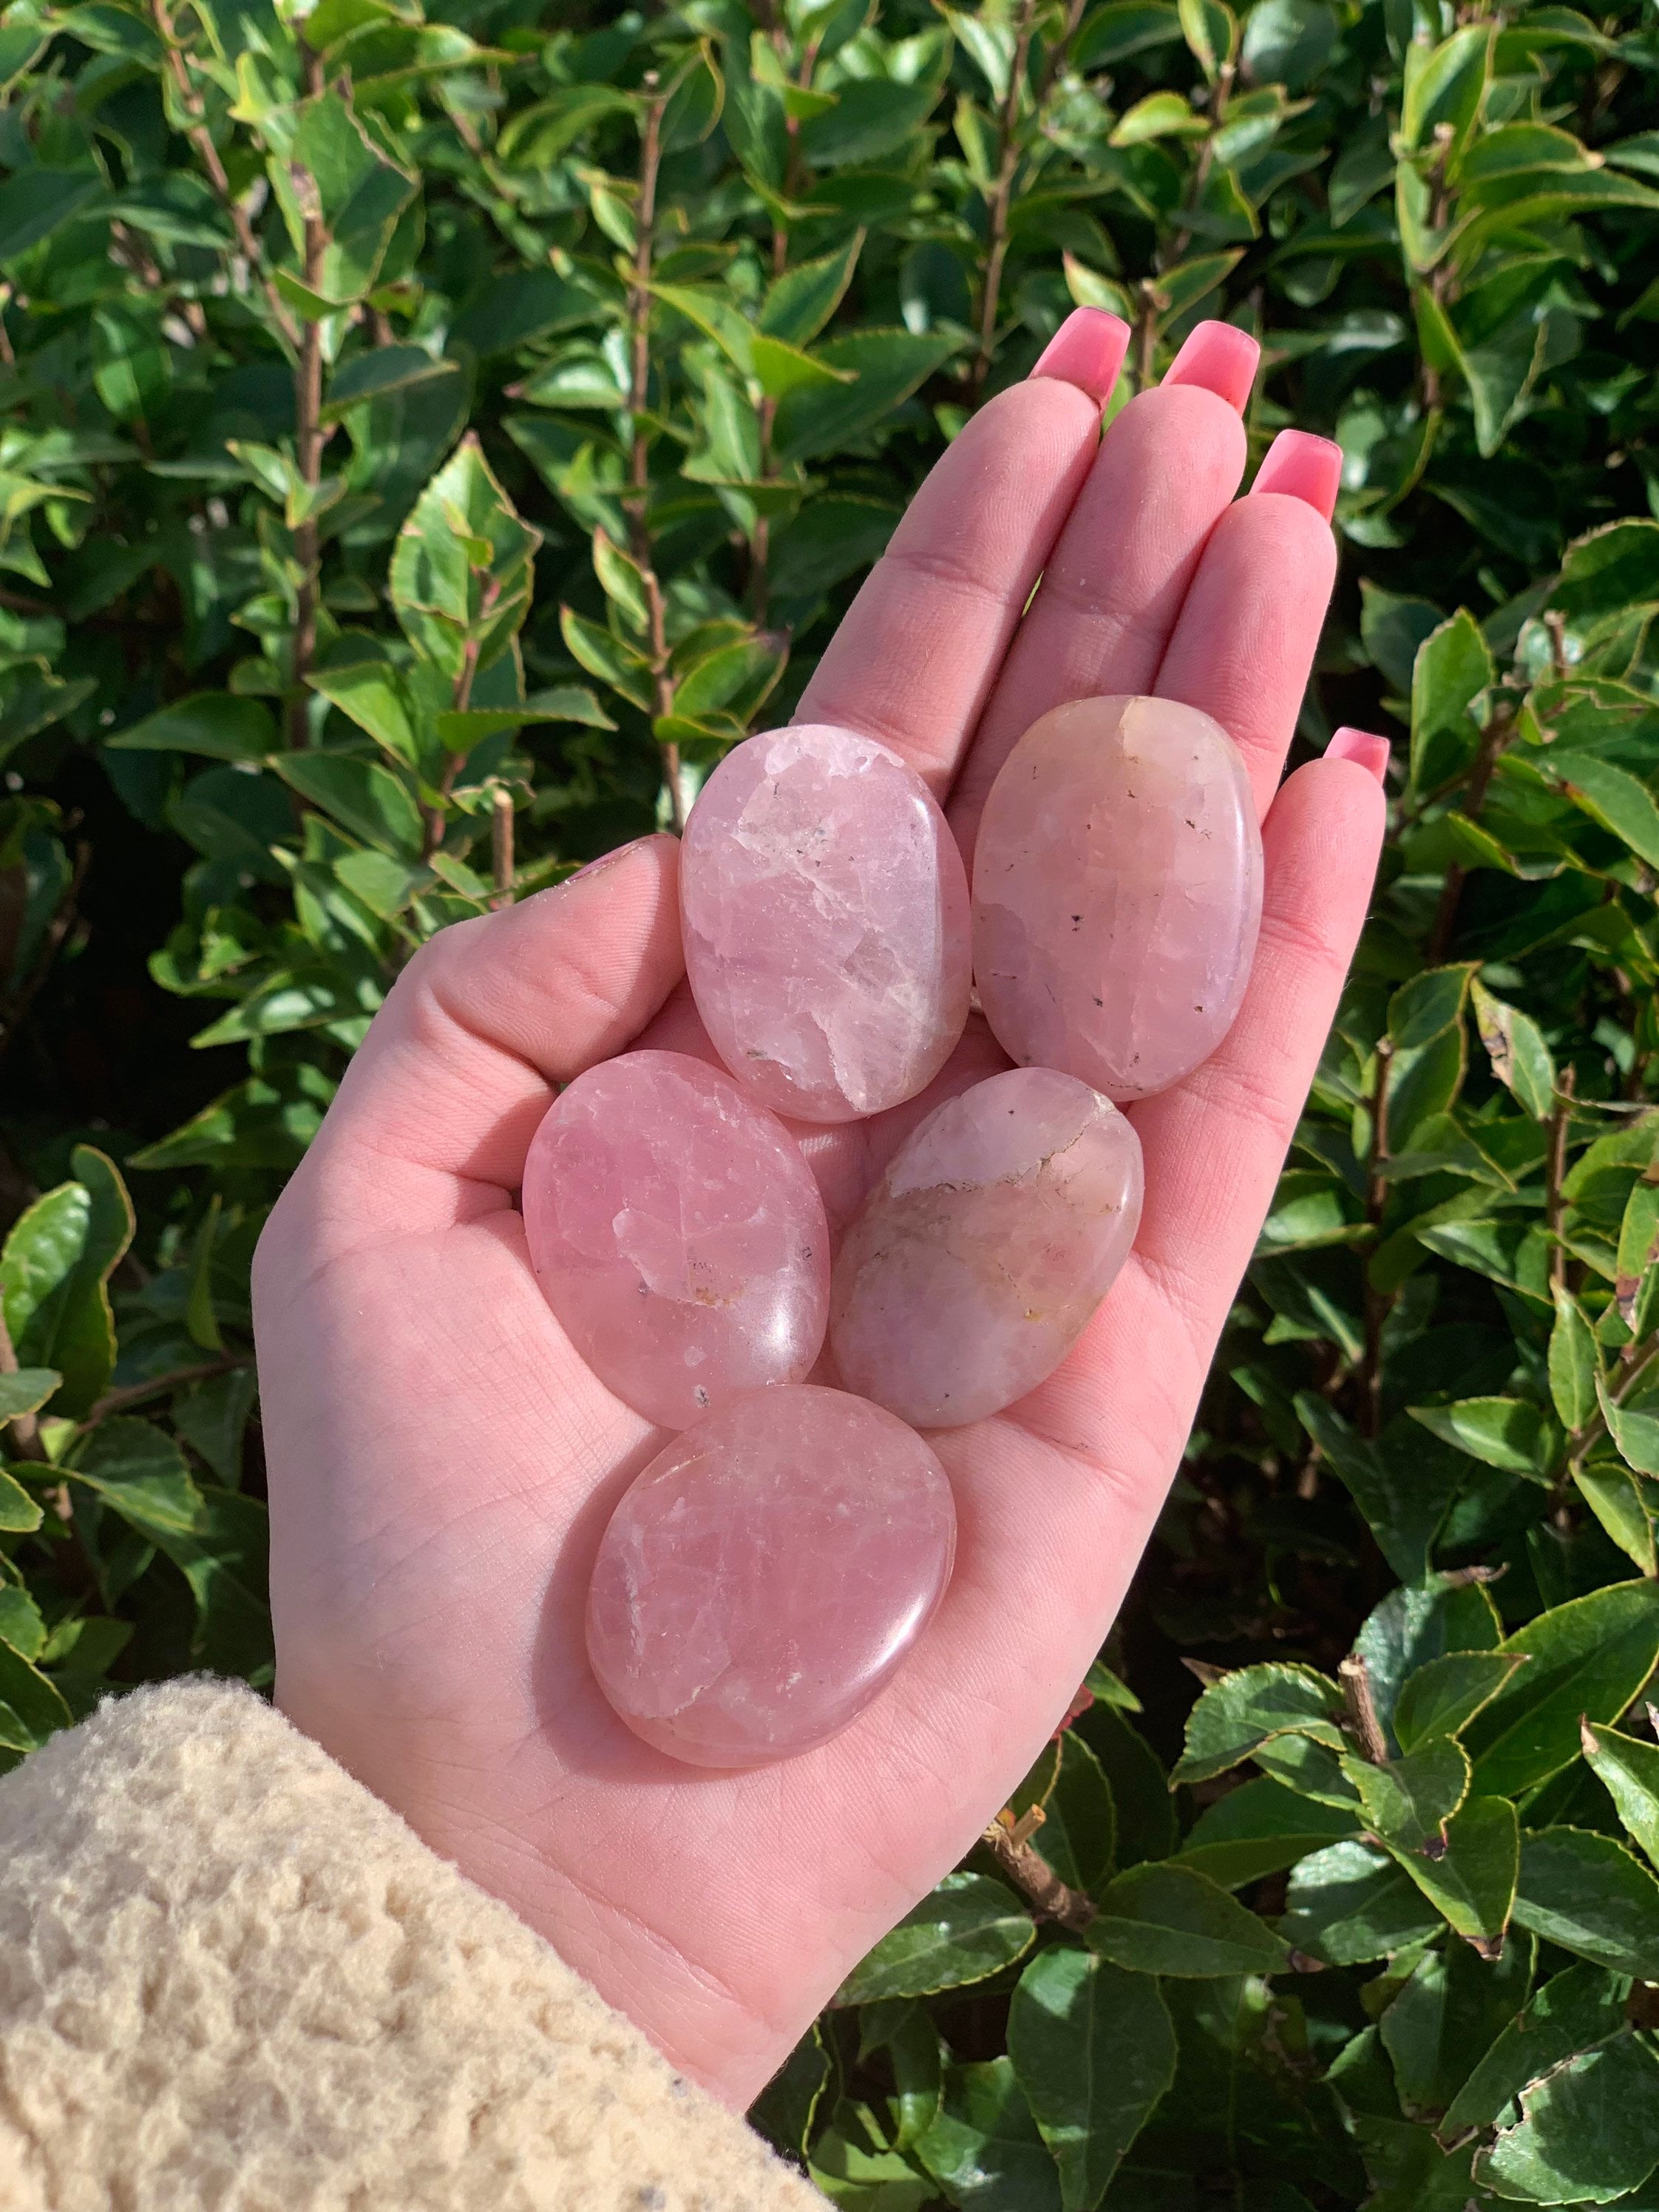 Polished Rose Quartz Worry Stones - 1.9 Size